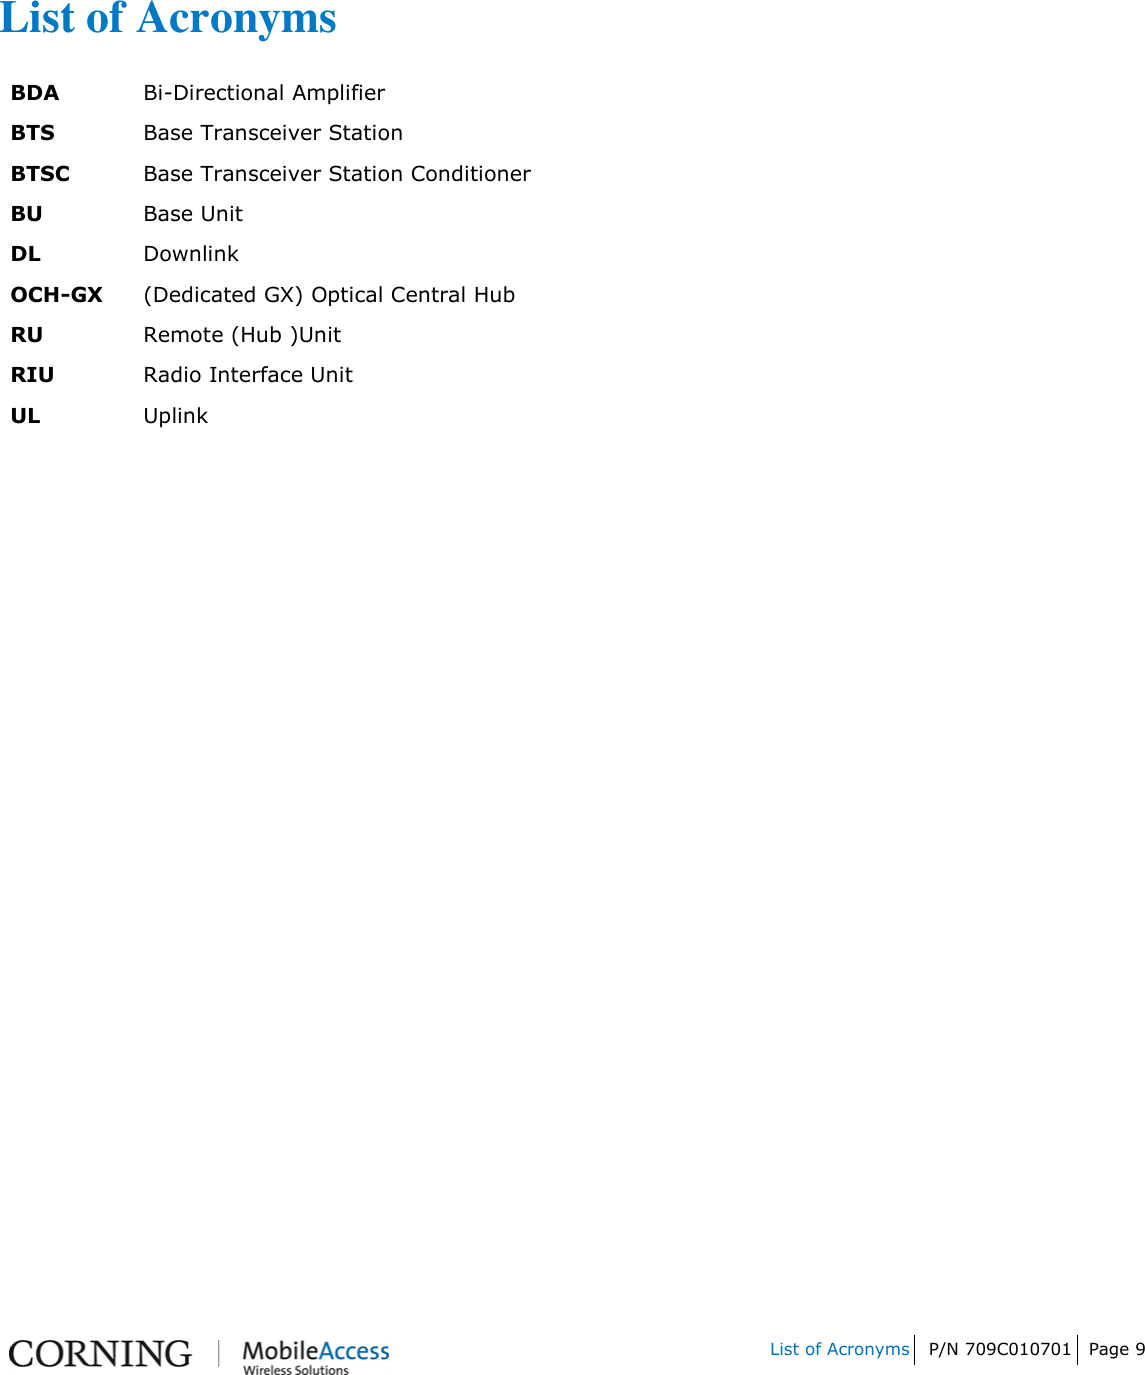         List of Acronyms P/N 709C010701 Page 9       List of Acronyms BDA Bi-Directional Amplifier BTS Base Transceiver Station BTSC Base Transceiver Station Conditioner BU Base Unit DL Downlink OCH-GX (Dedicated GX) Optical Central Hub RU Remote (Hub )Unit RIU Radio Interface Unit UL Uplink 